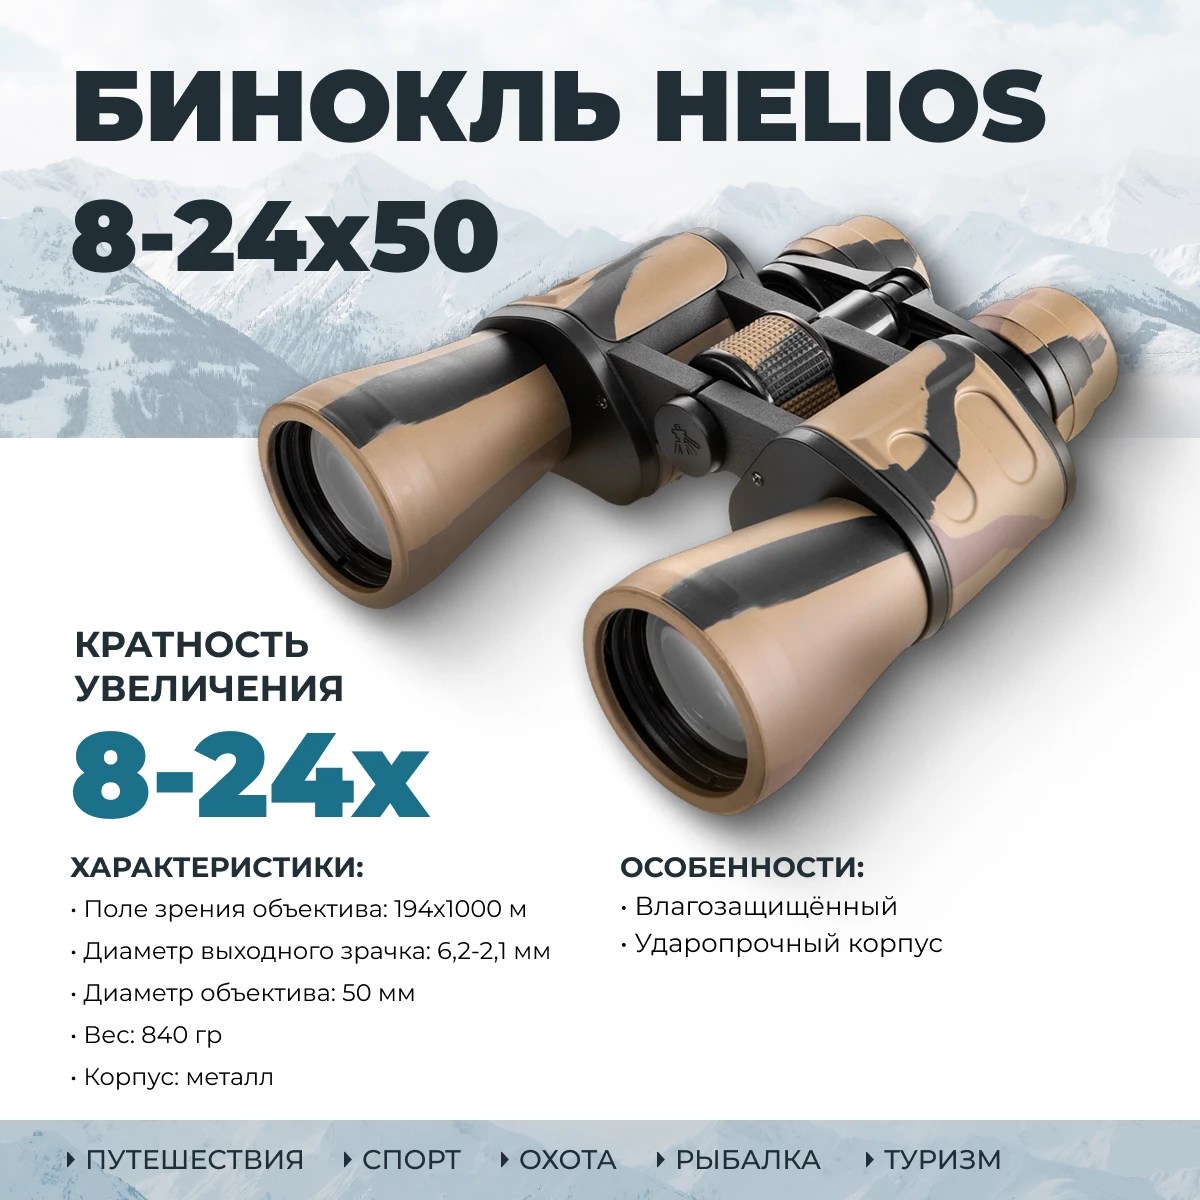 Бинокль в футляре 8-24х50 (HS 8-24x50) Helios ударопрочный бинокль для охоты туризма